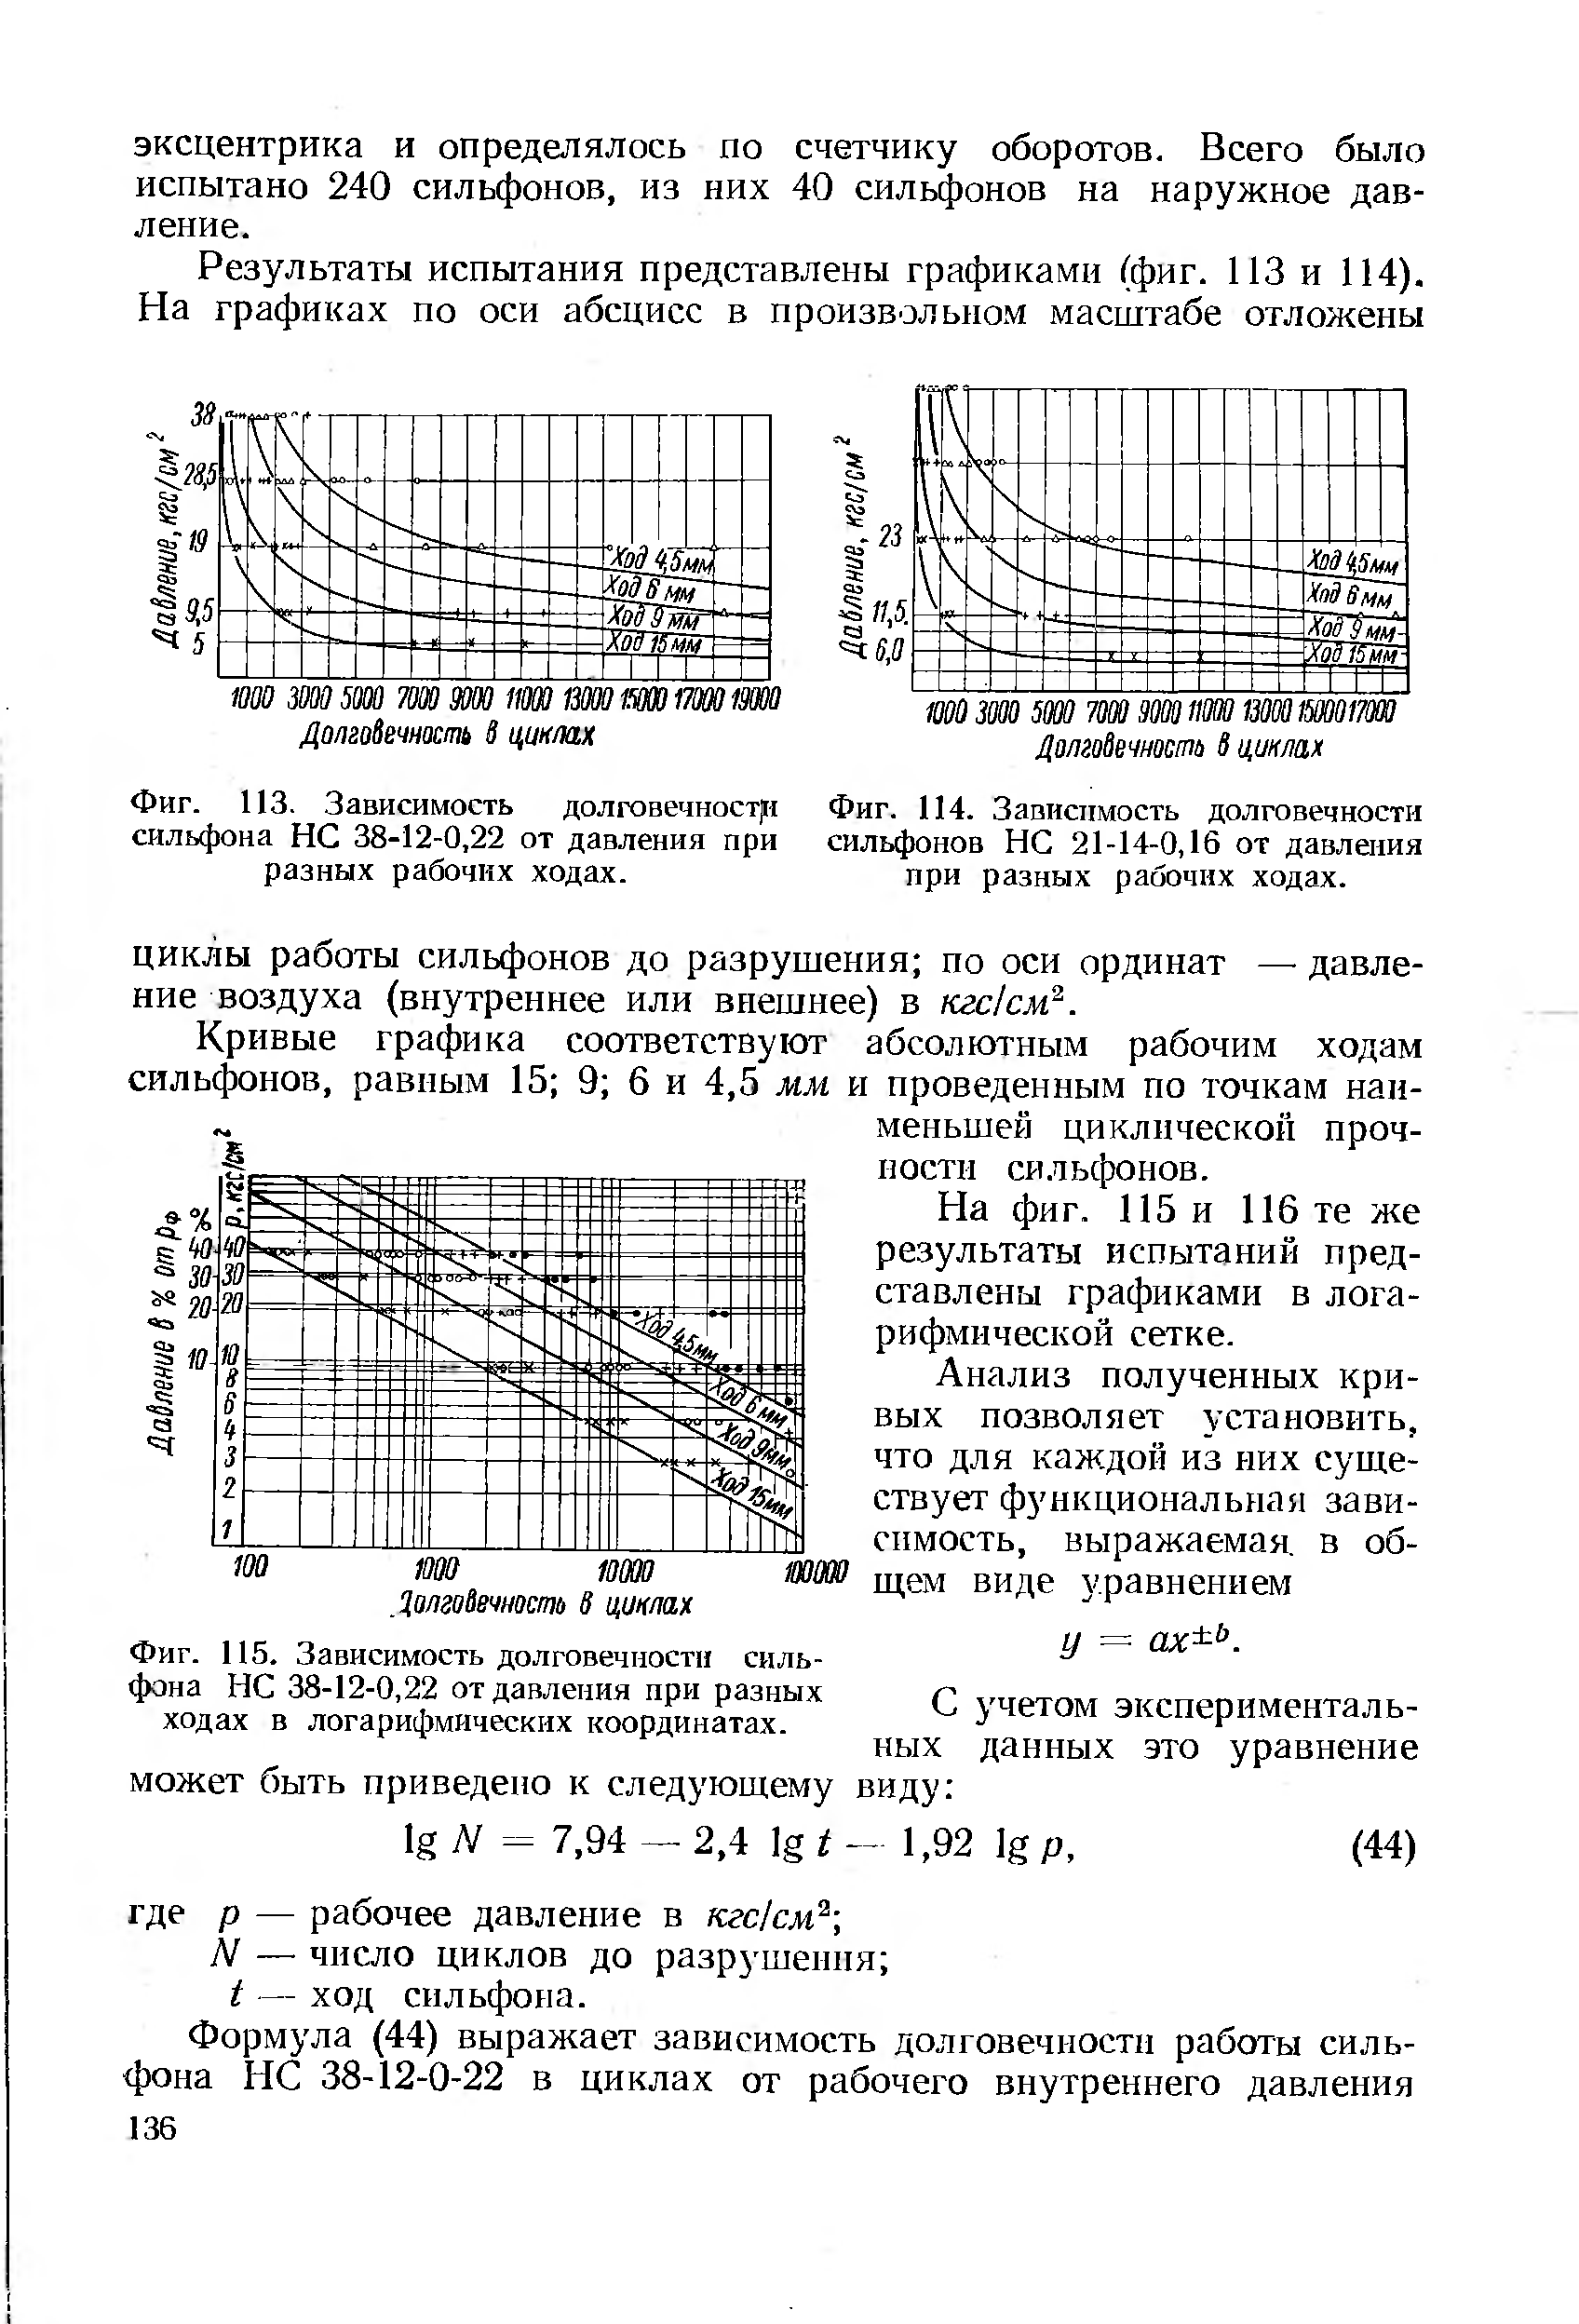 Фиг. 115. Зависимость долговечности сильфона НС 38-12-0,22 от давления при разных ходах в логарифмических координатах.
